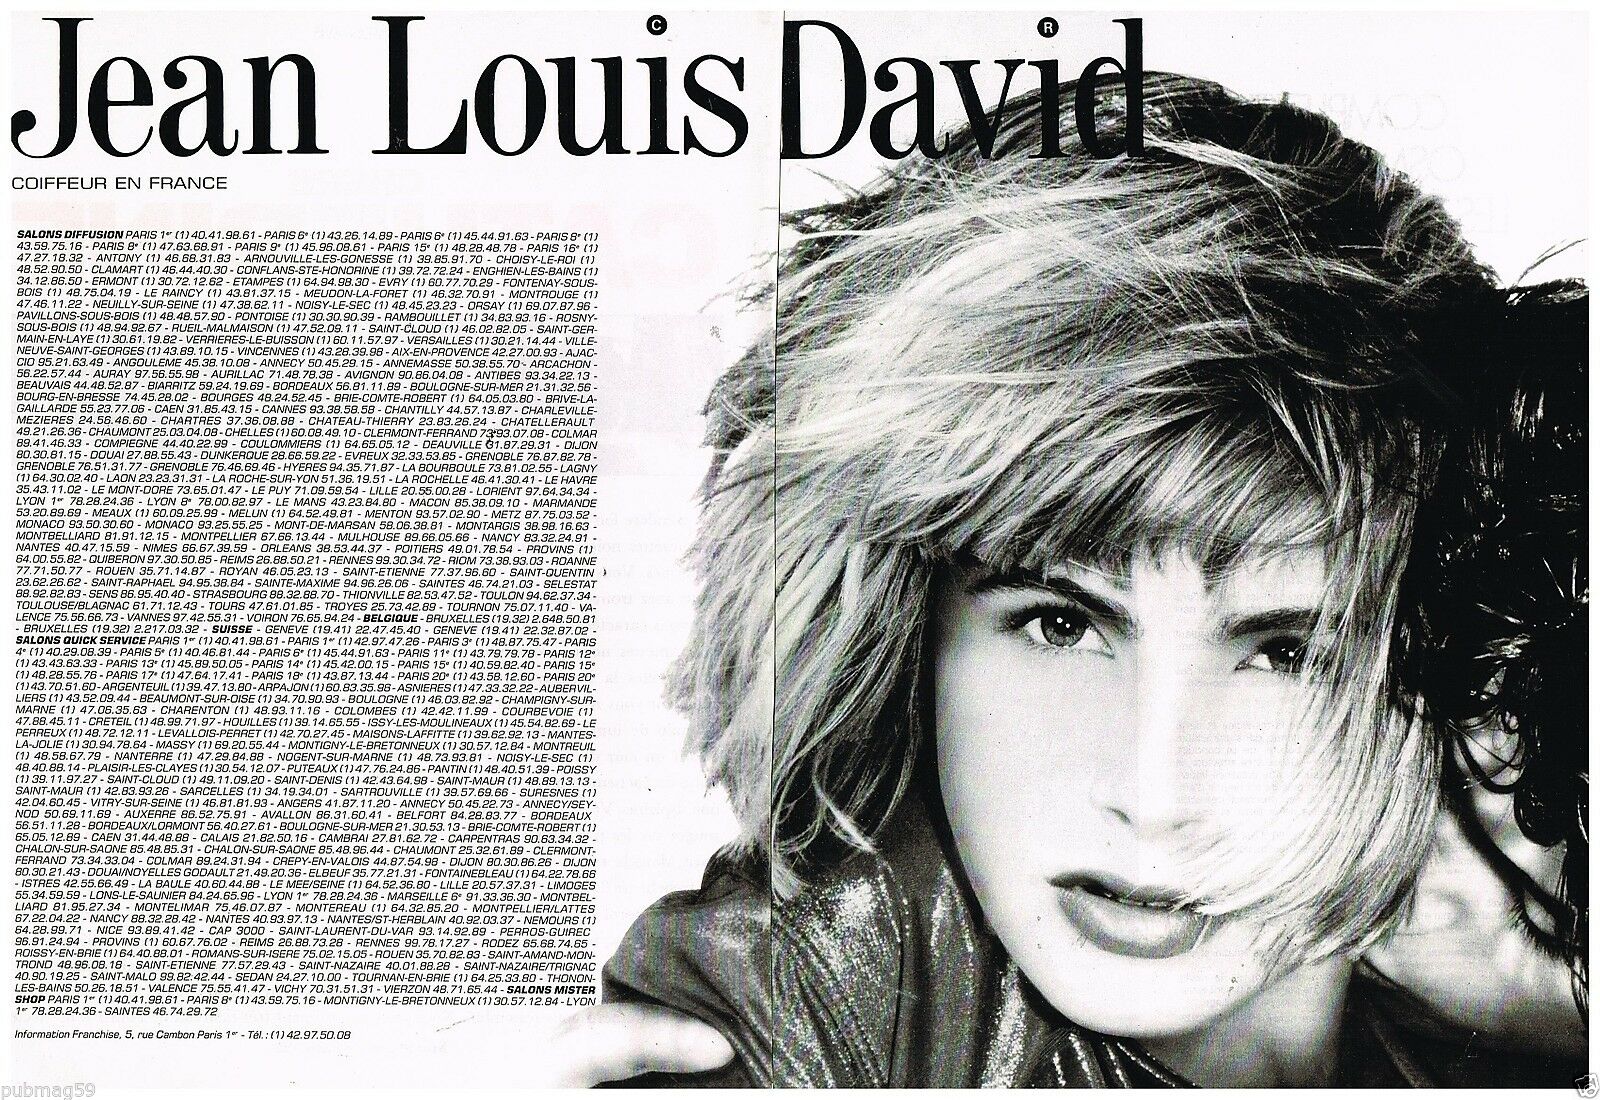 1989 salon de coiffure Jean-Louis David C2